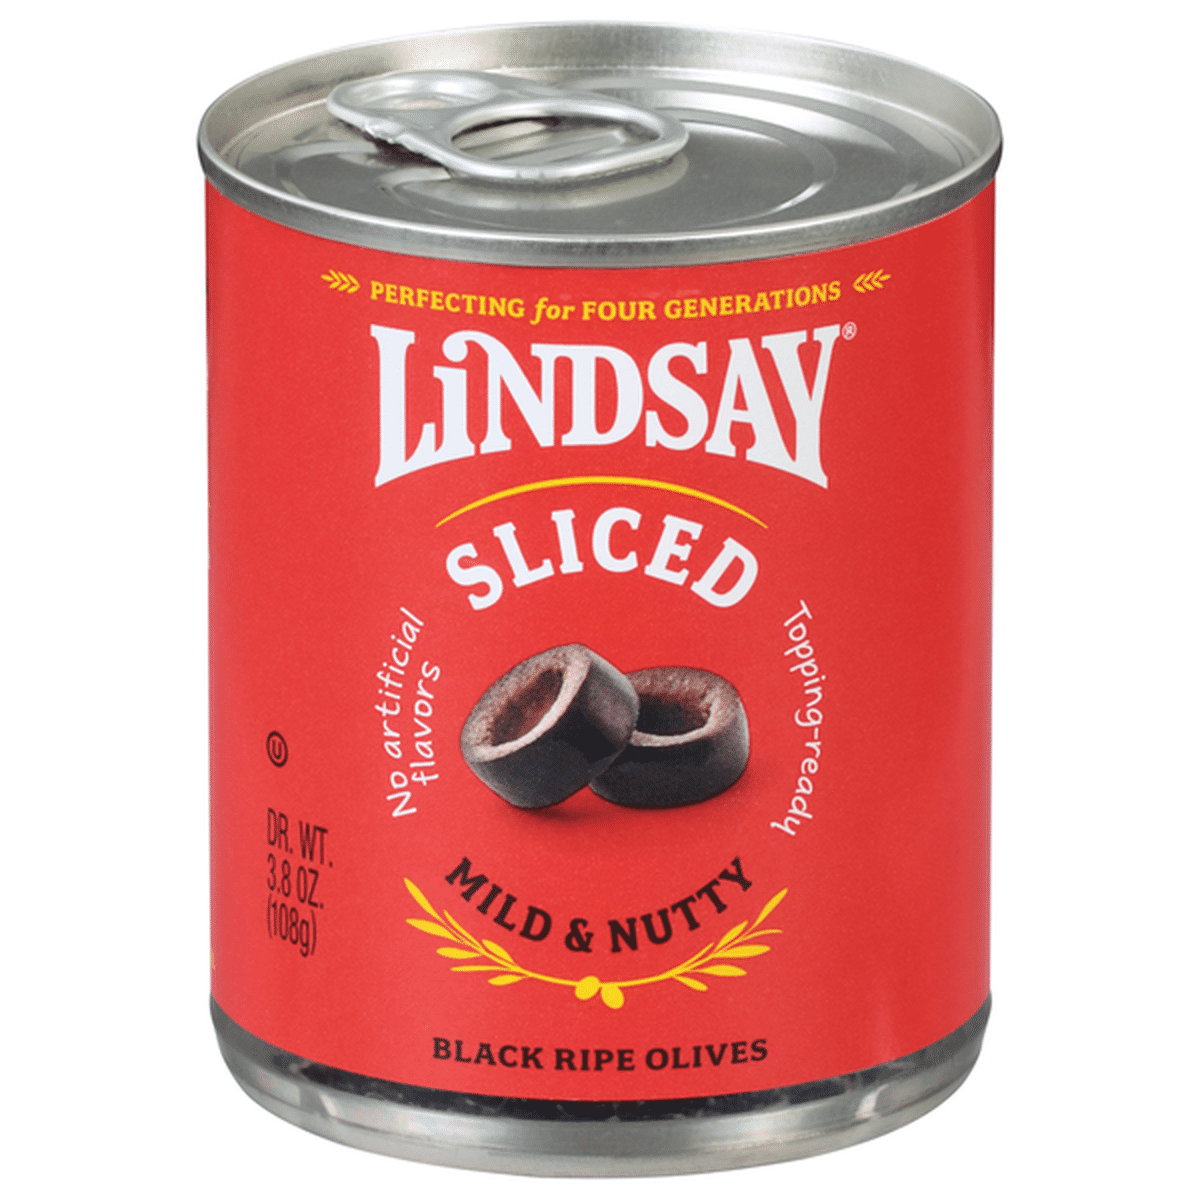 Lindsay Large Pitted Black Ripe Olives, 6 oz 